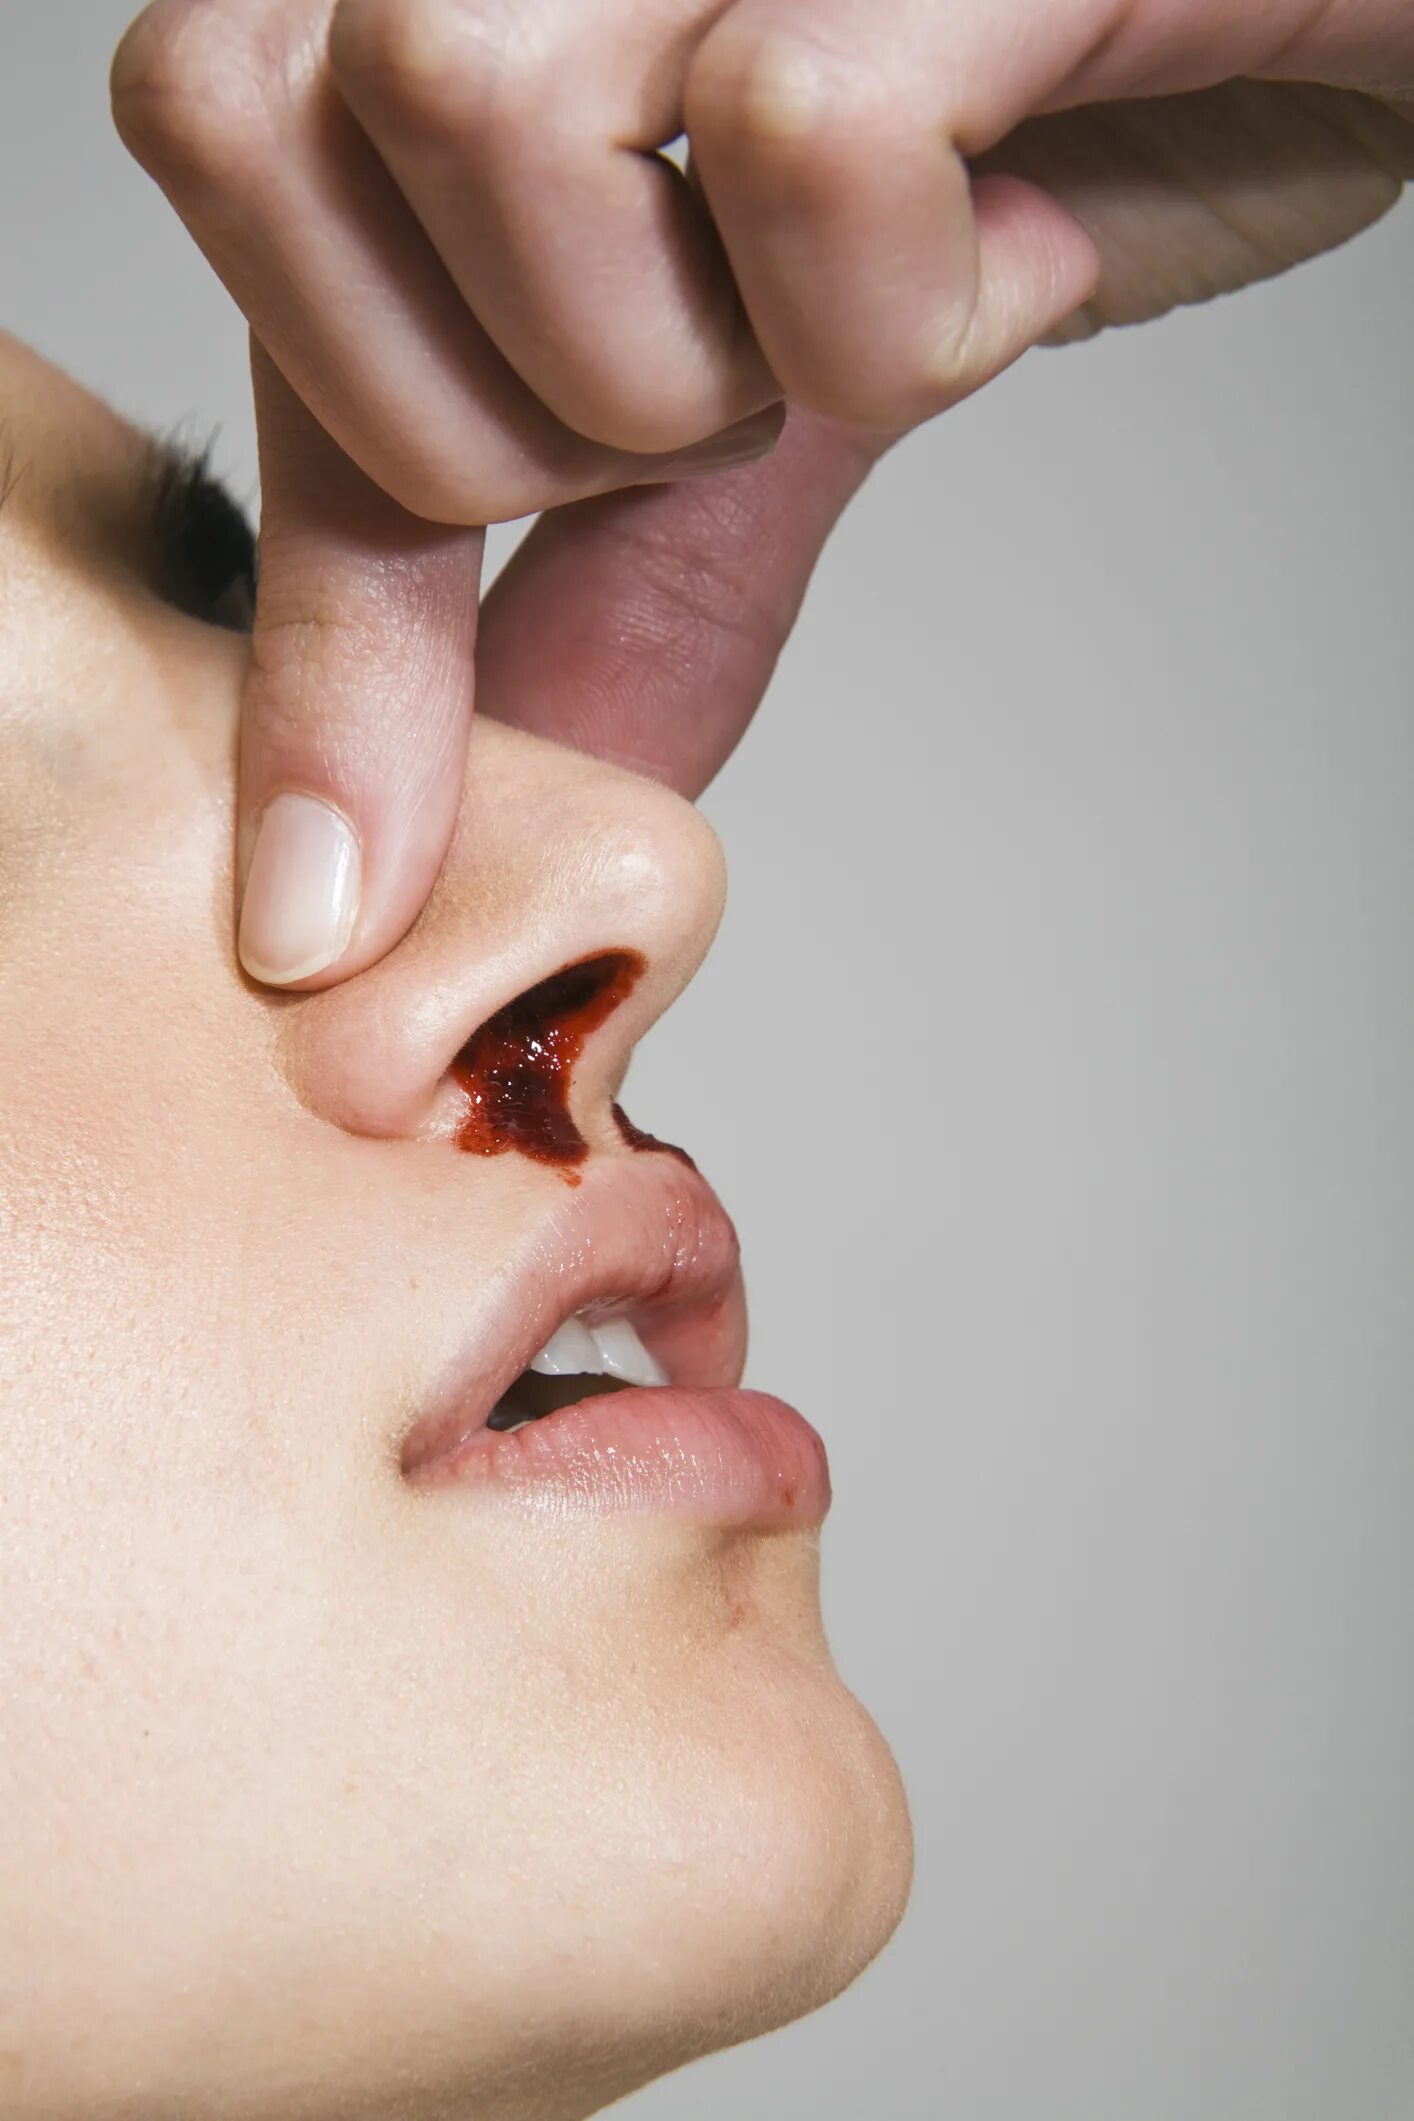 Нососовое кровотечение. Эпистаксис – носовое кровотечение.. Сильно сушит нос